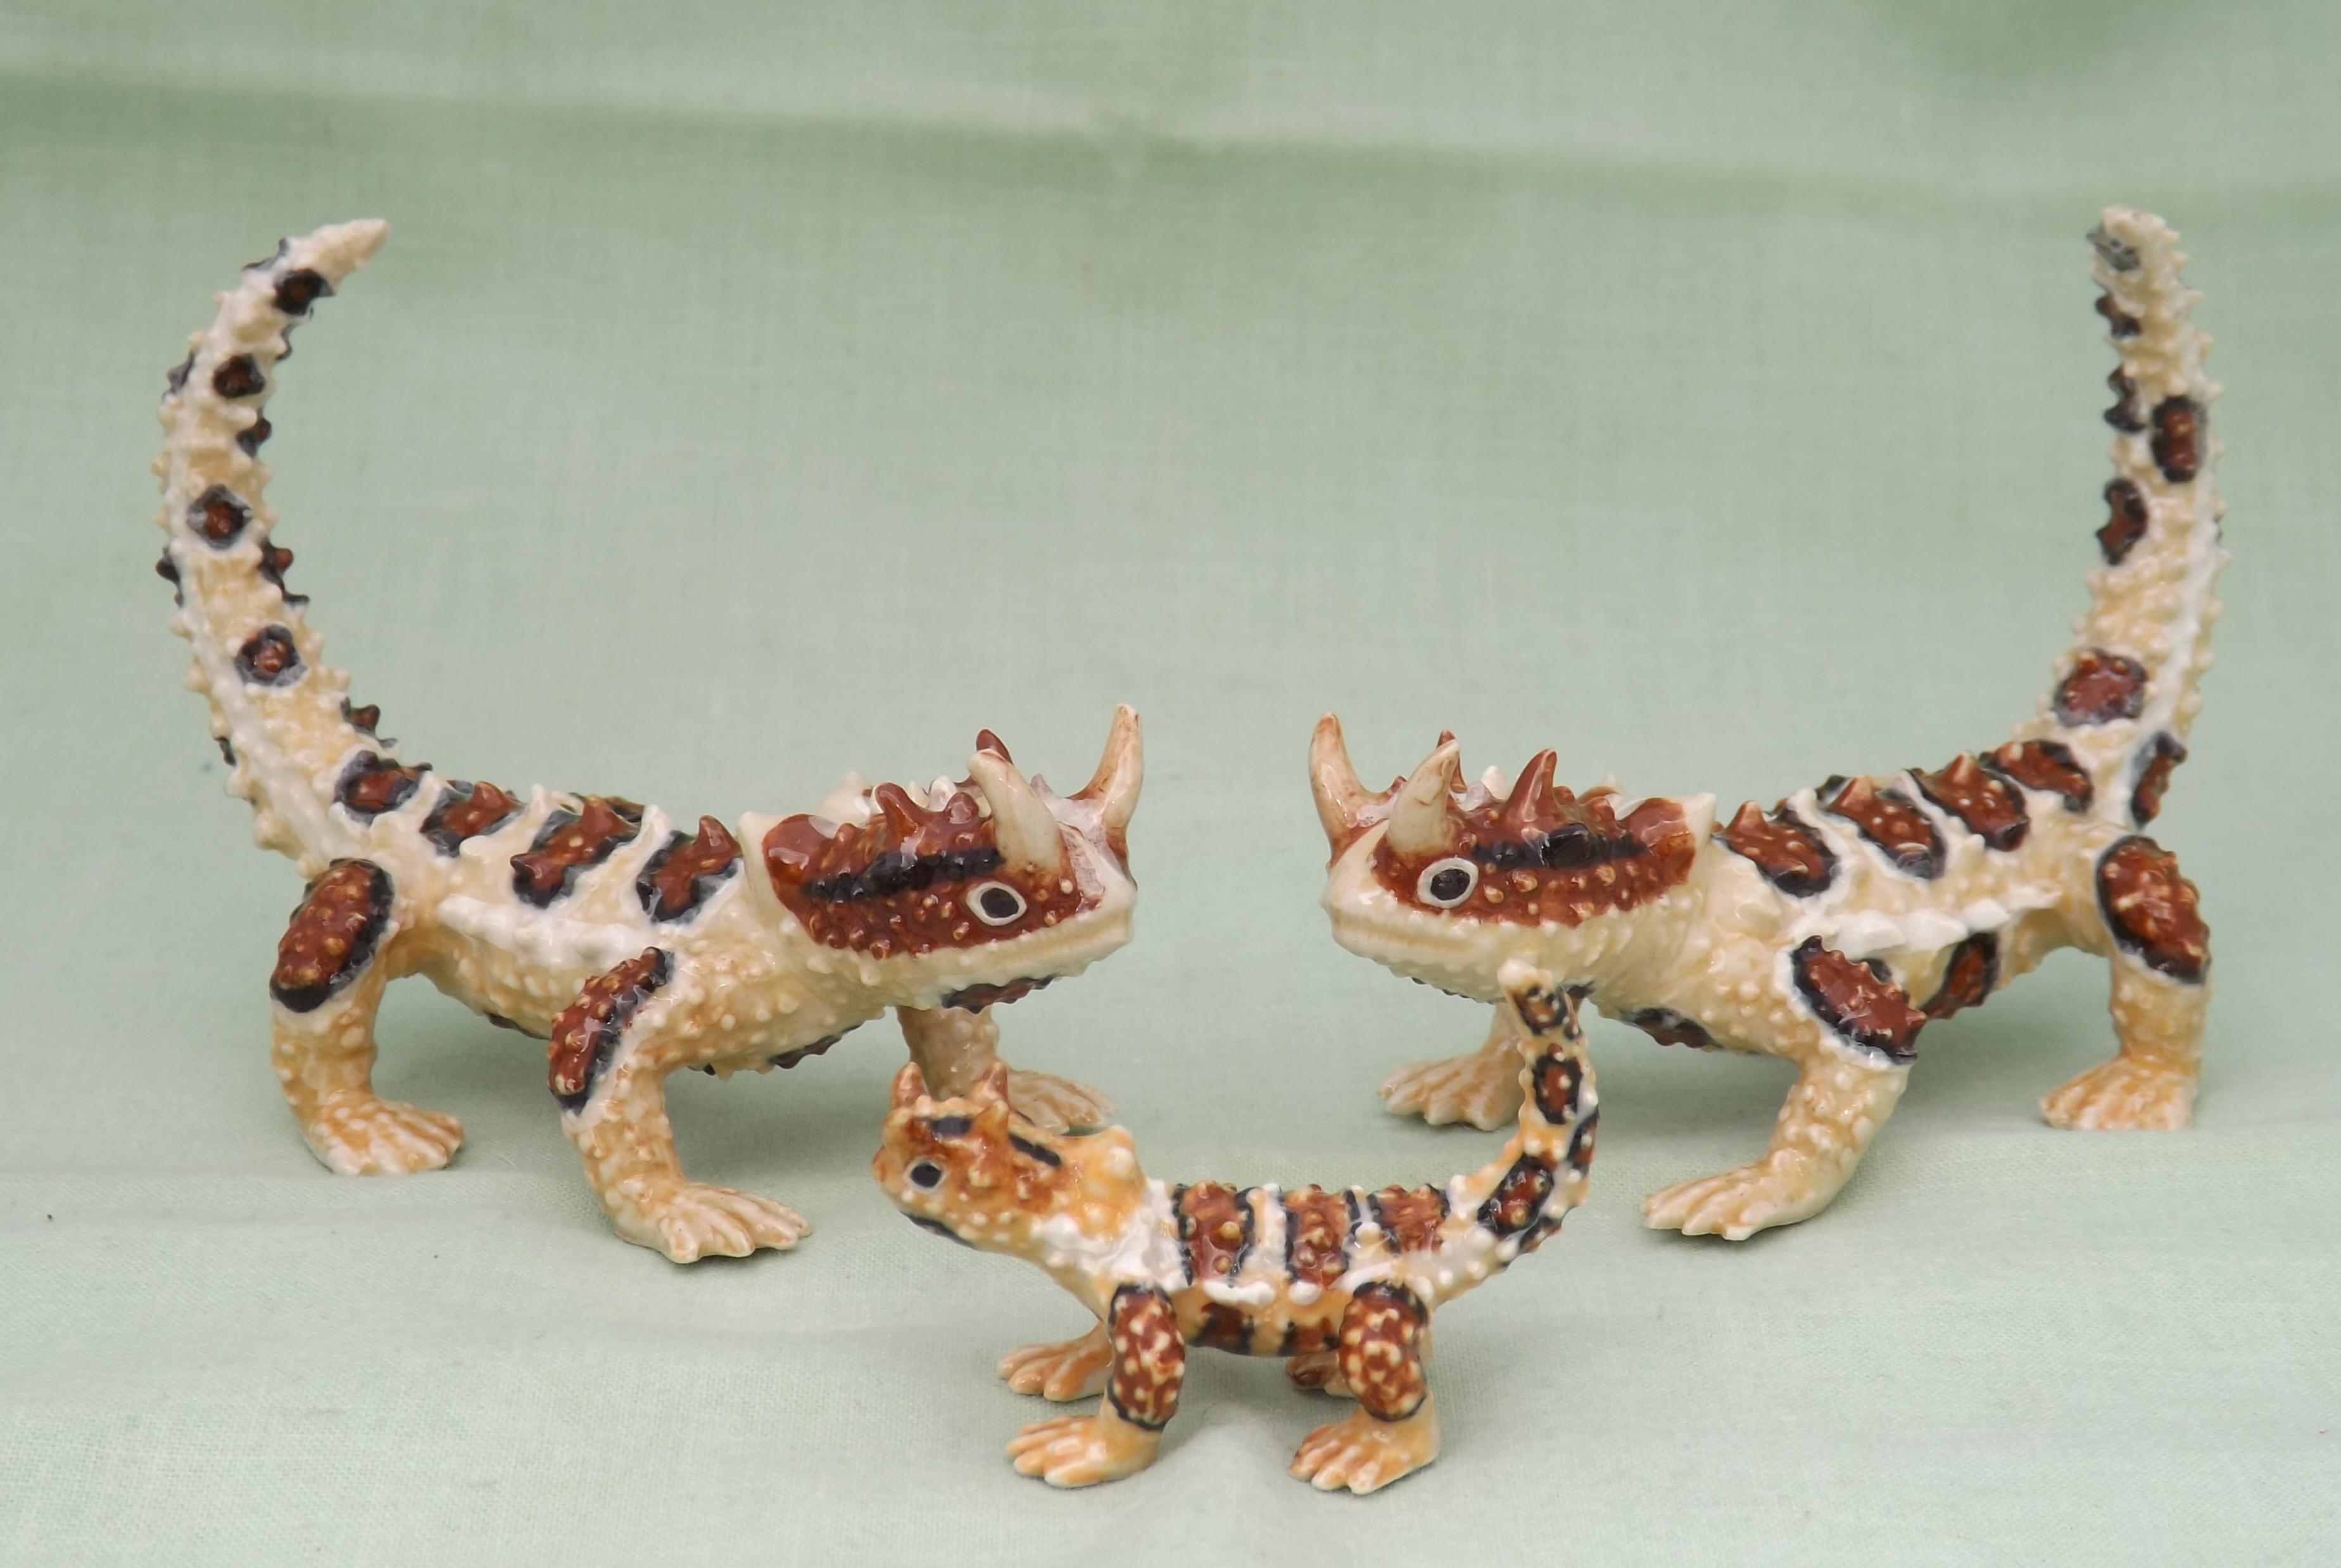 Klima Scorpion Miniature Animal Figurine Support Wildlife Rehab